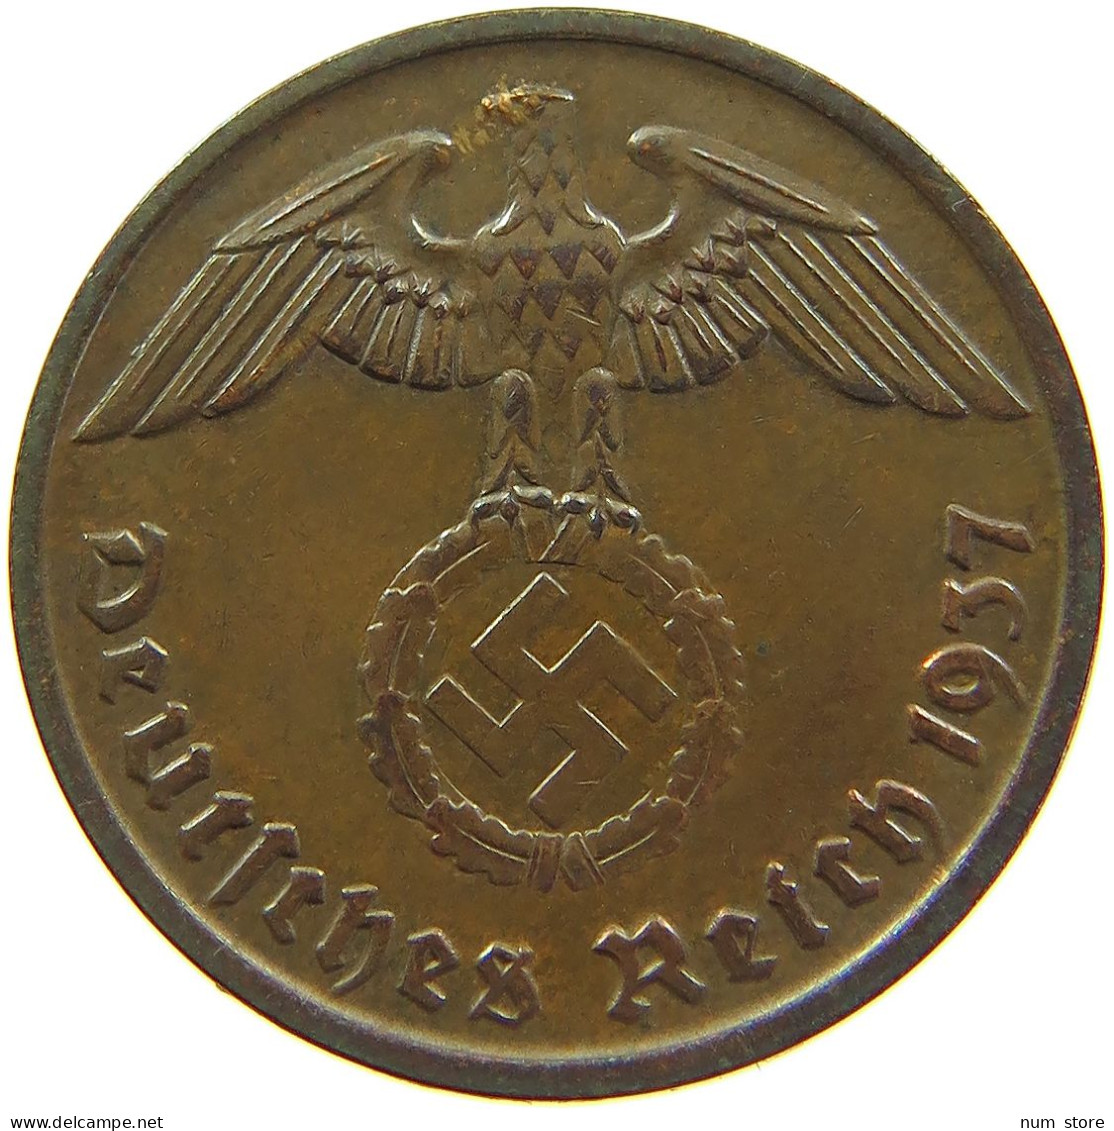 GERMANY 2 REICHSPFENNIG 1937 A #s095 0179 - 2 Reichspfennig